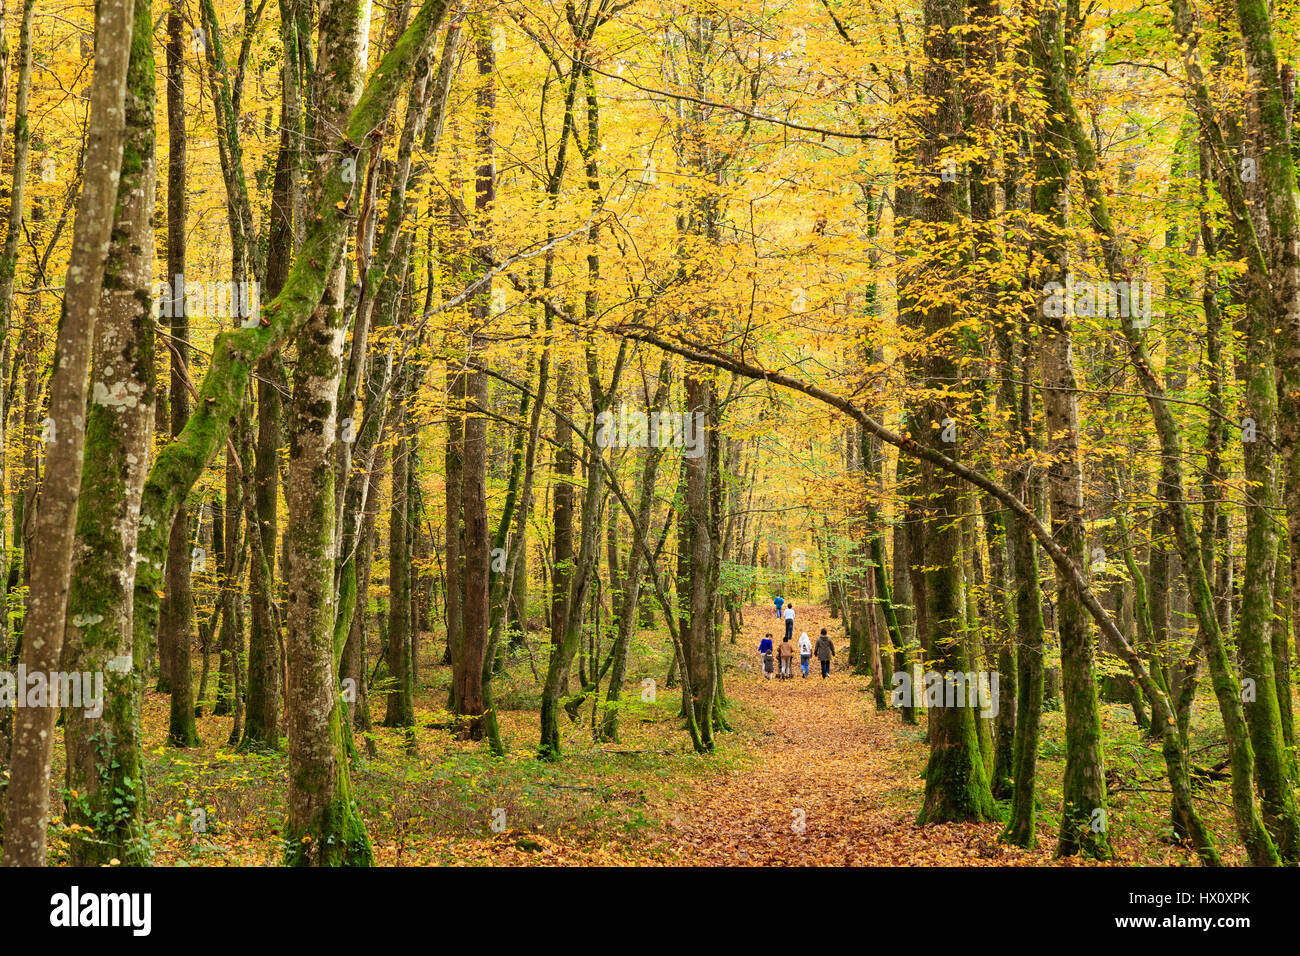 La France, l'Allier, forêt de Tronçais, Saint Bonnet Troncais, automne promenade familiale Banque D'Images